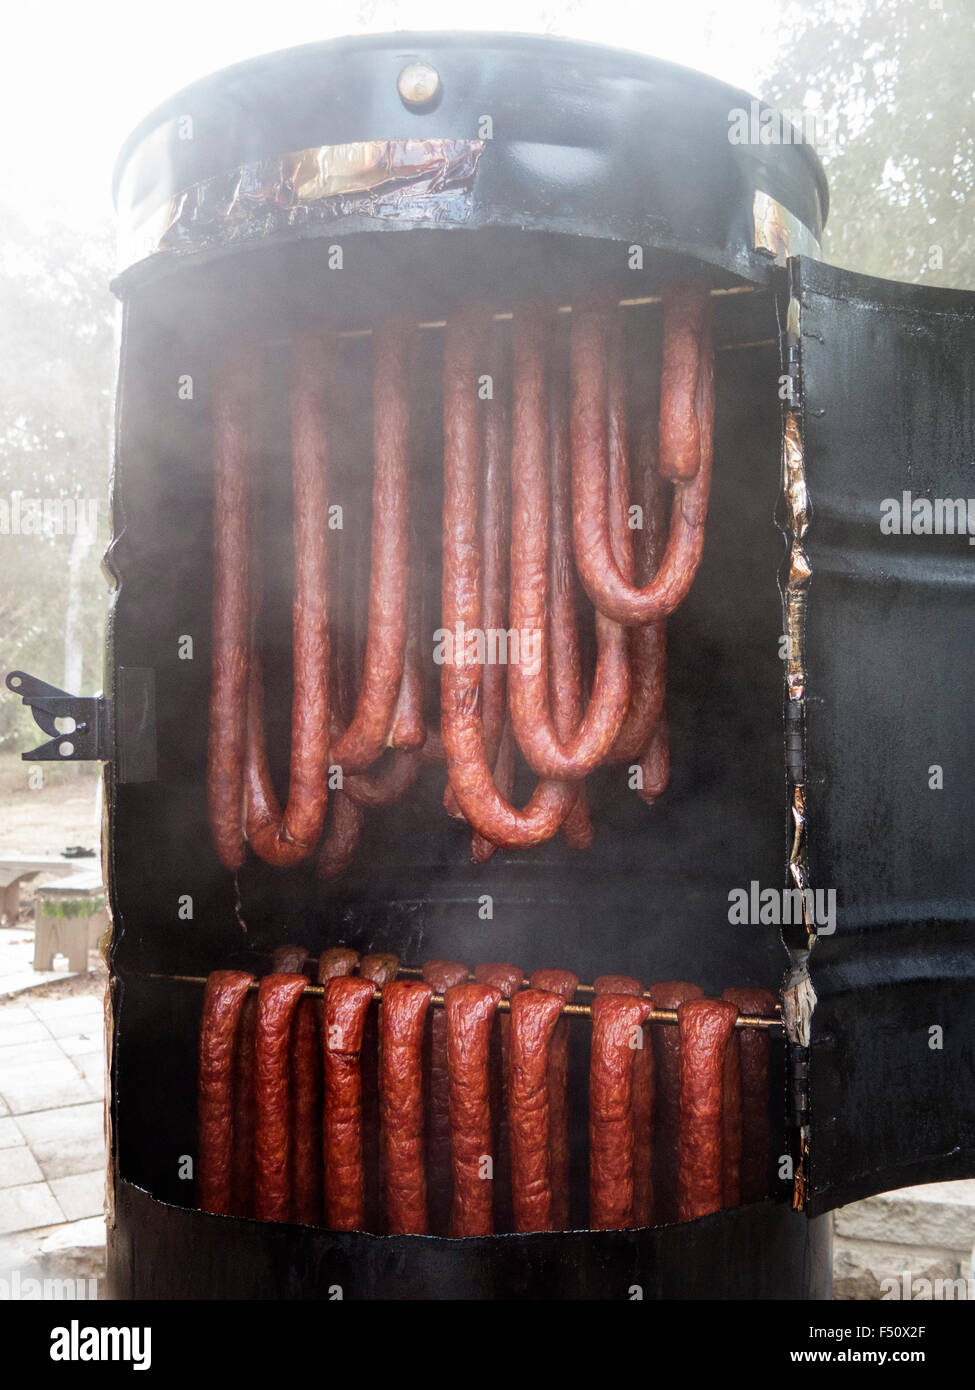 Smoking sausage Stock Photo